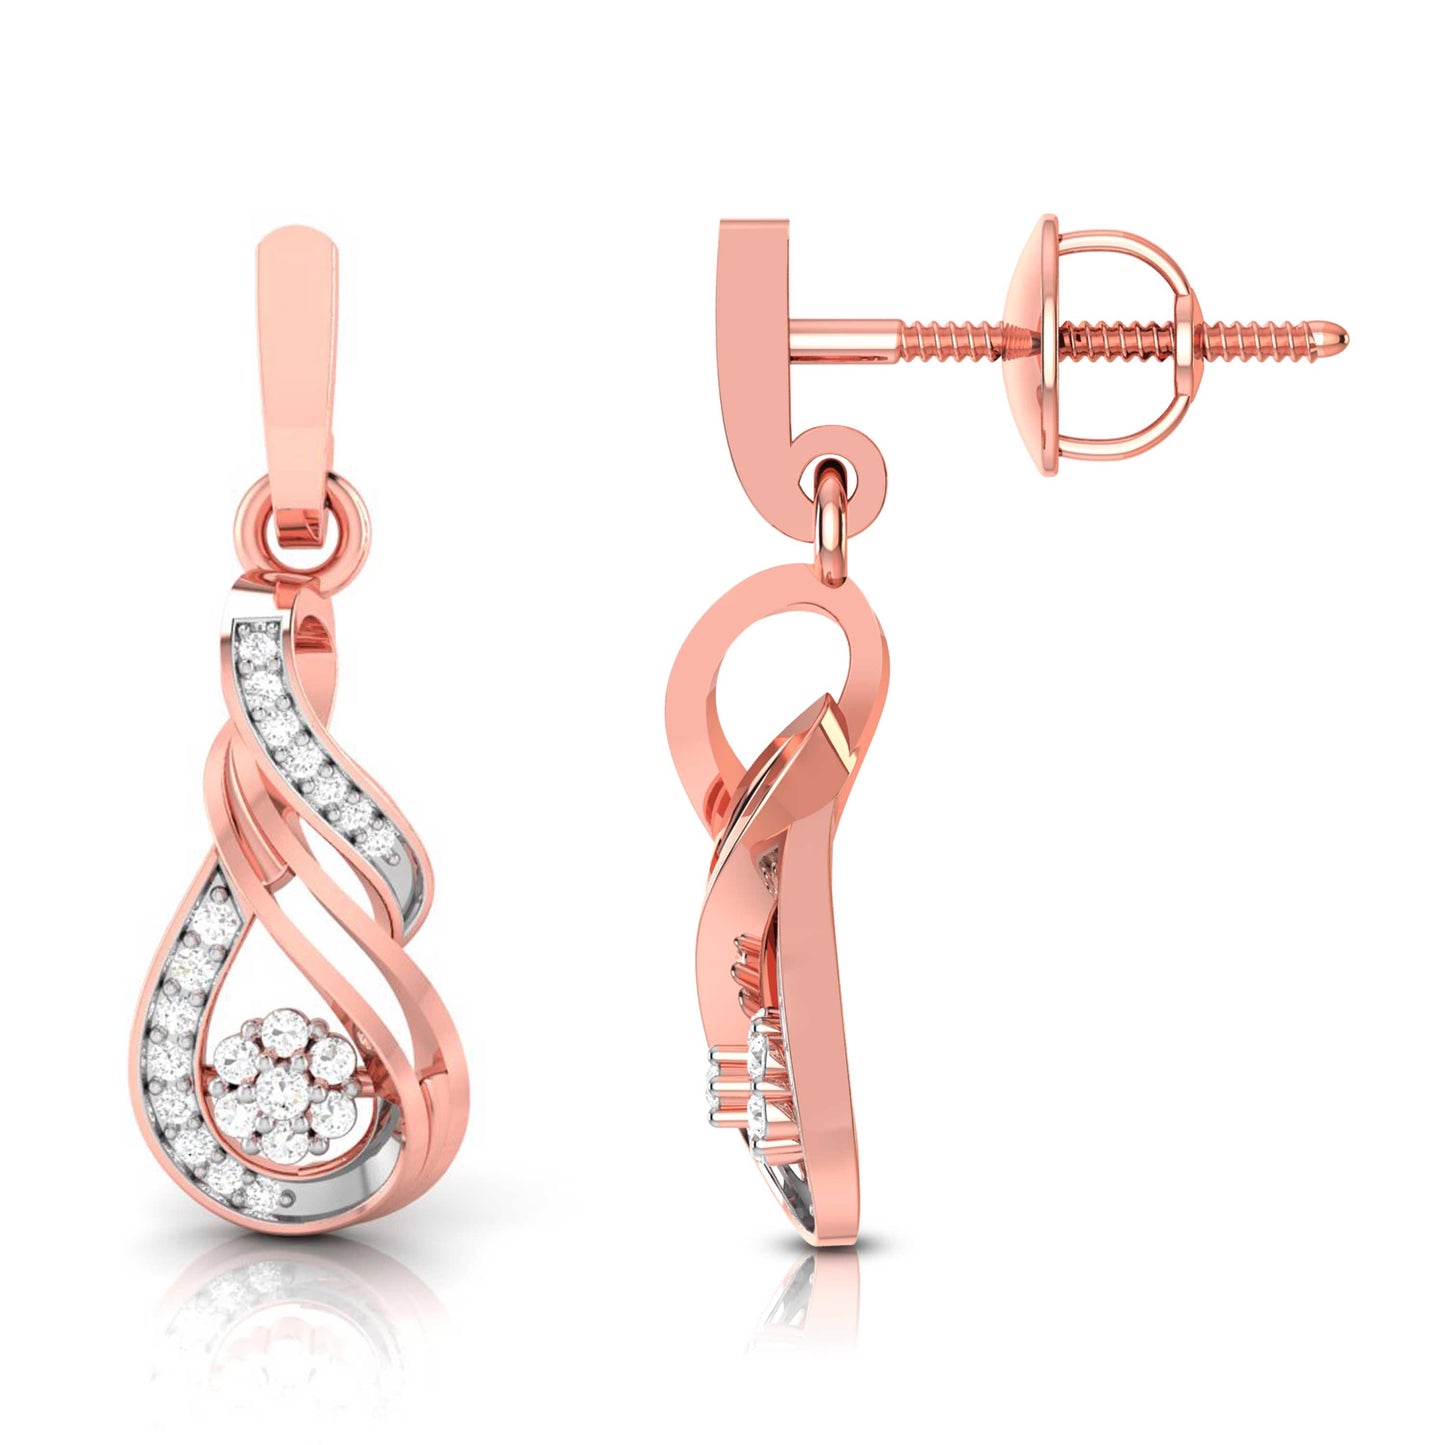 Daily wear earrings design Pirouette Lab Grown Diamond Earrings Fiona Diamonds